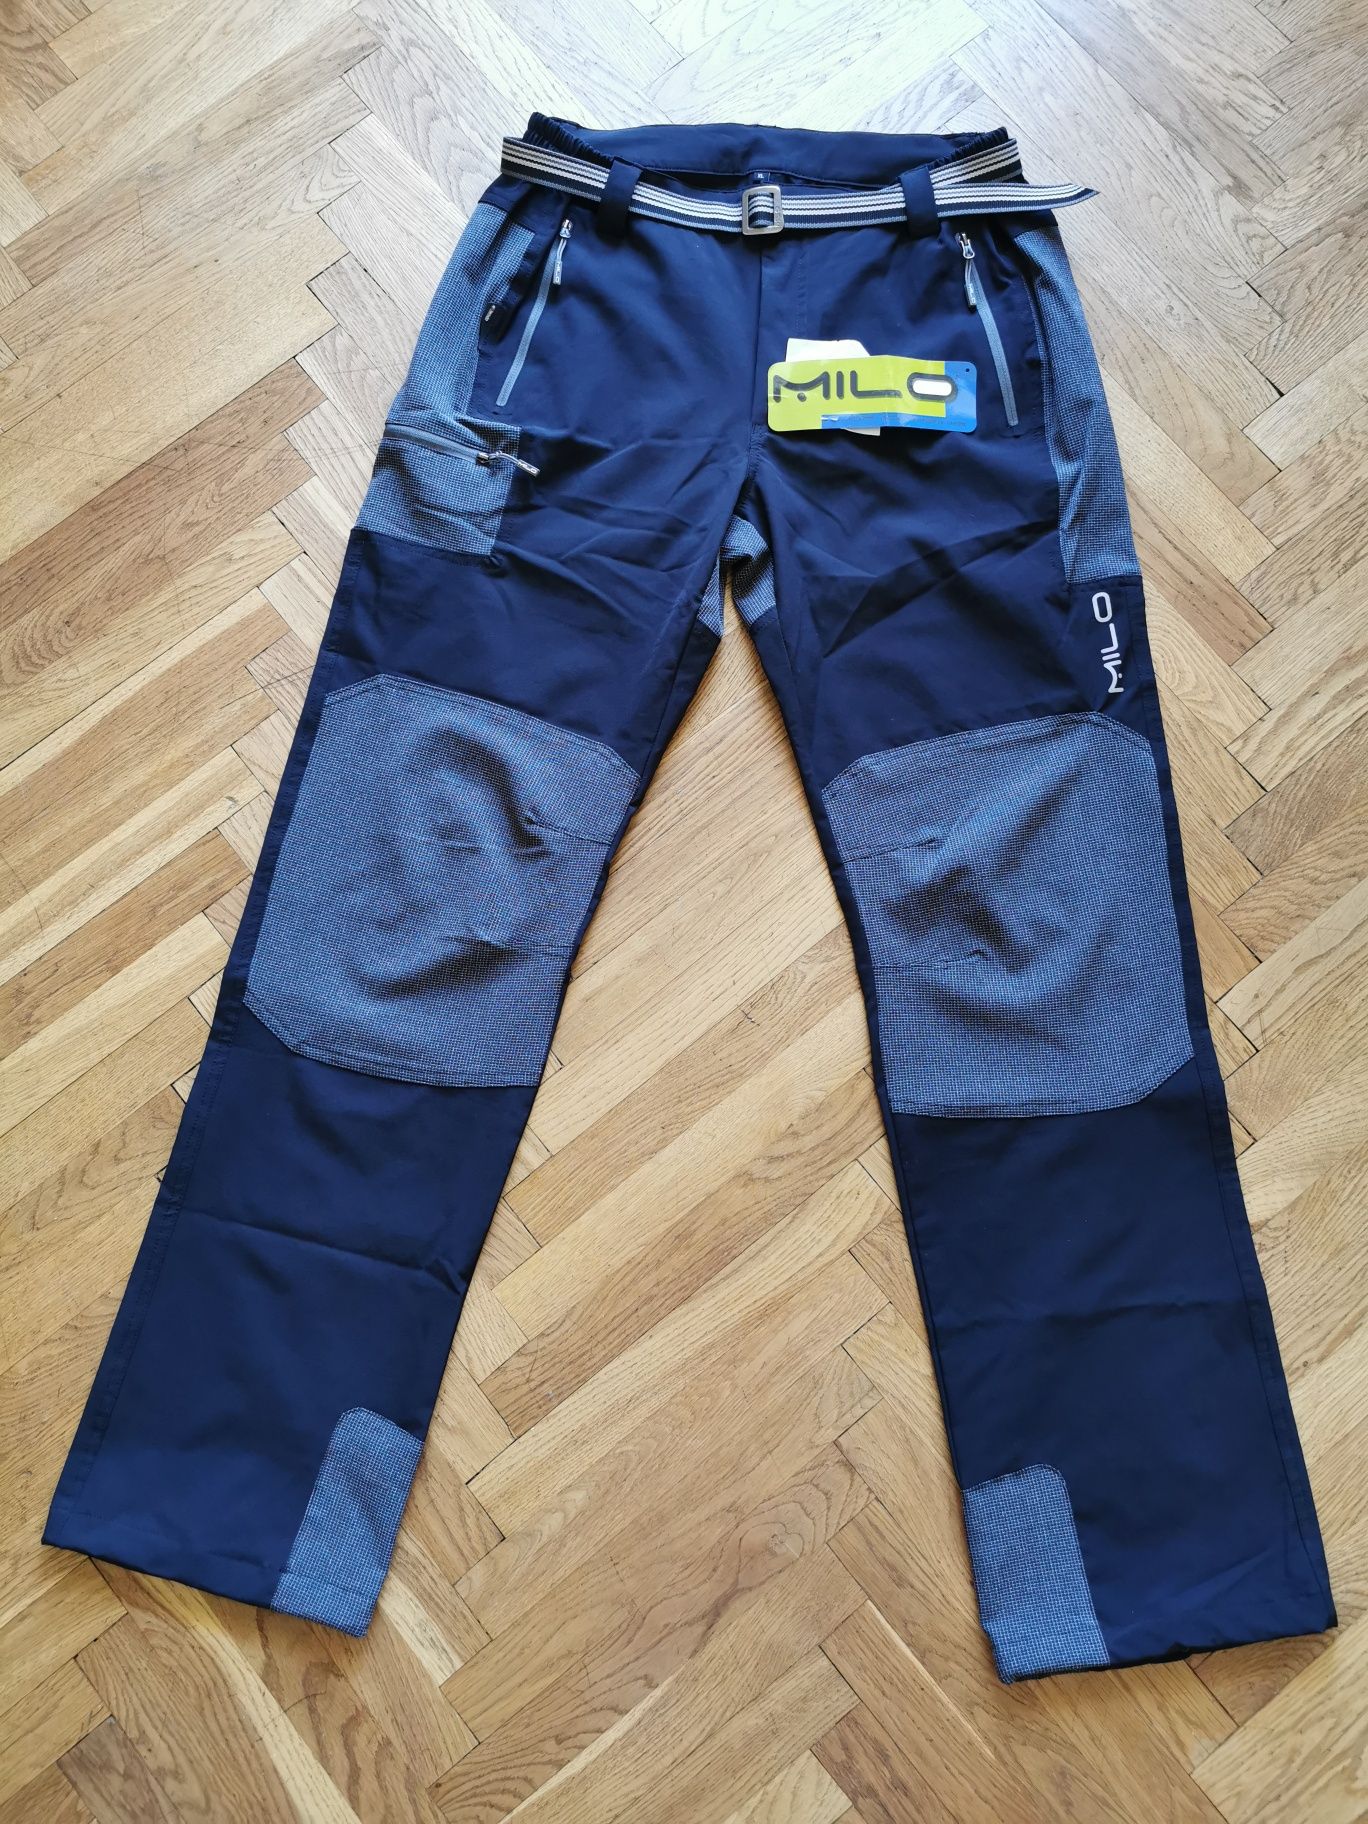 Spodnie trekingowe Milo Gabro XL nowe